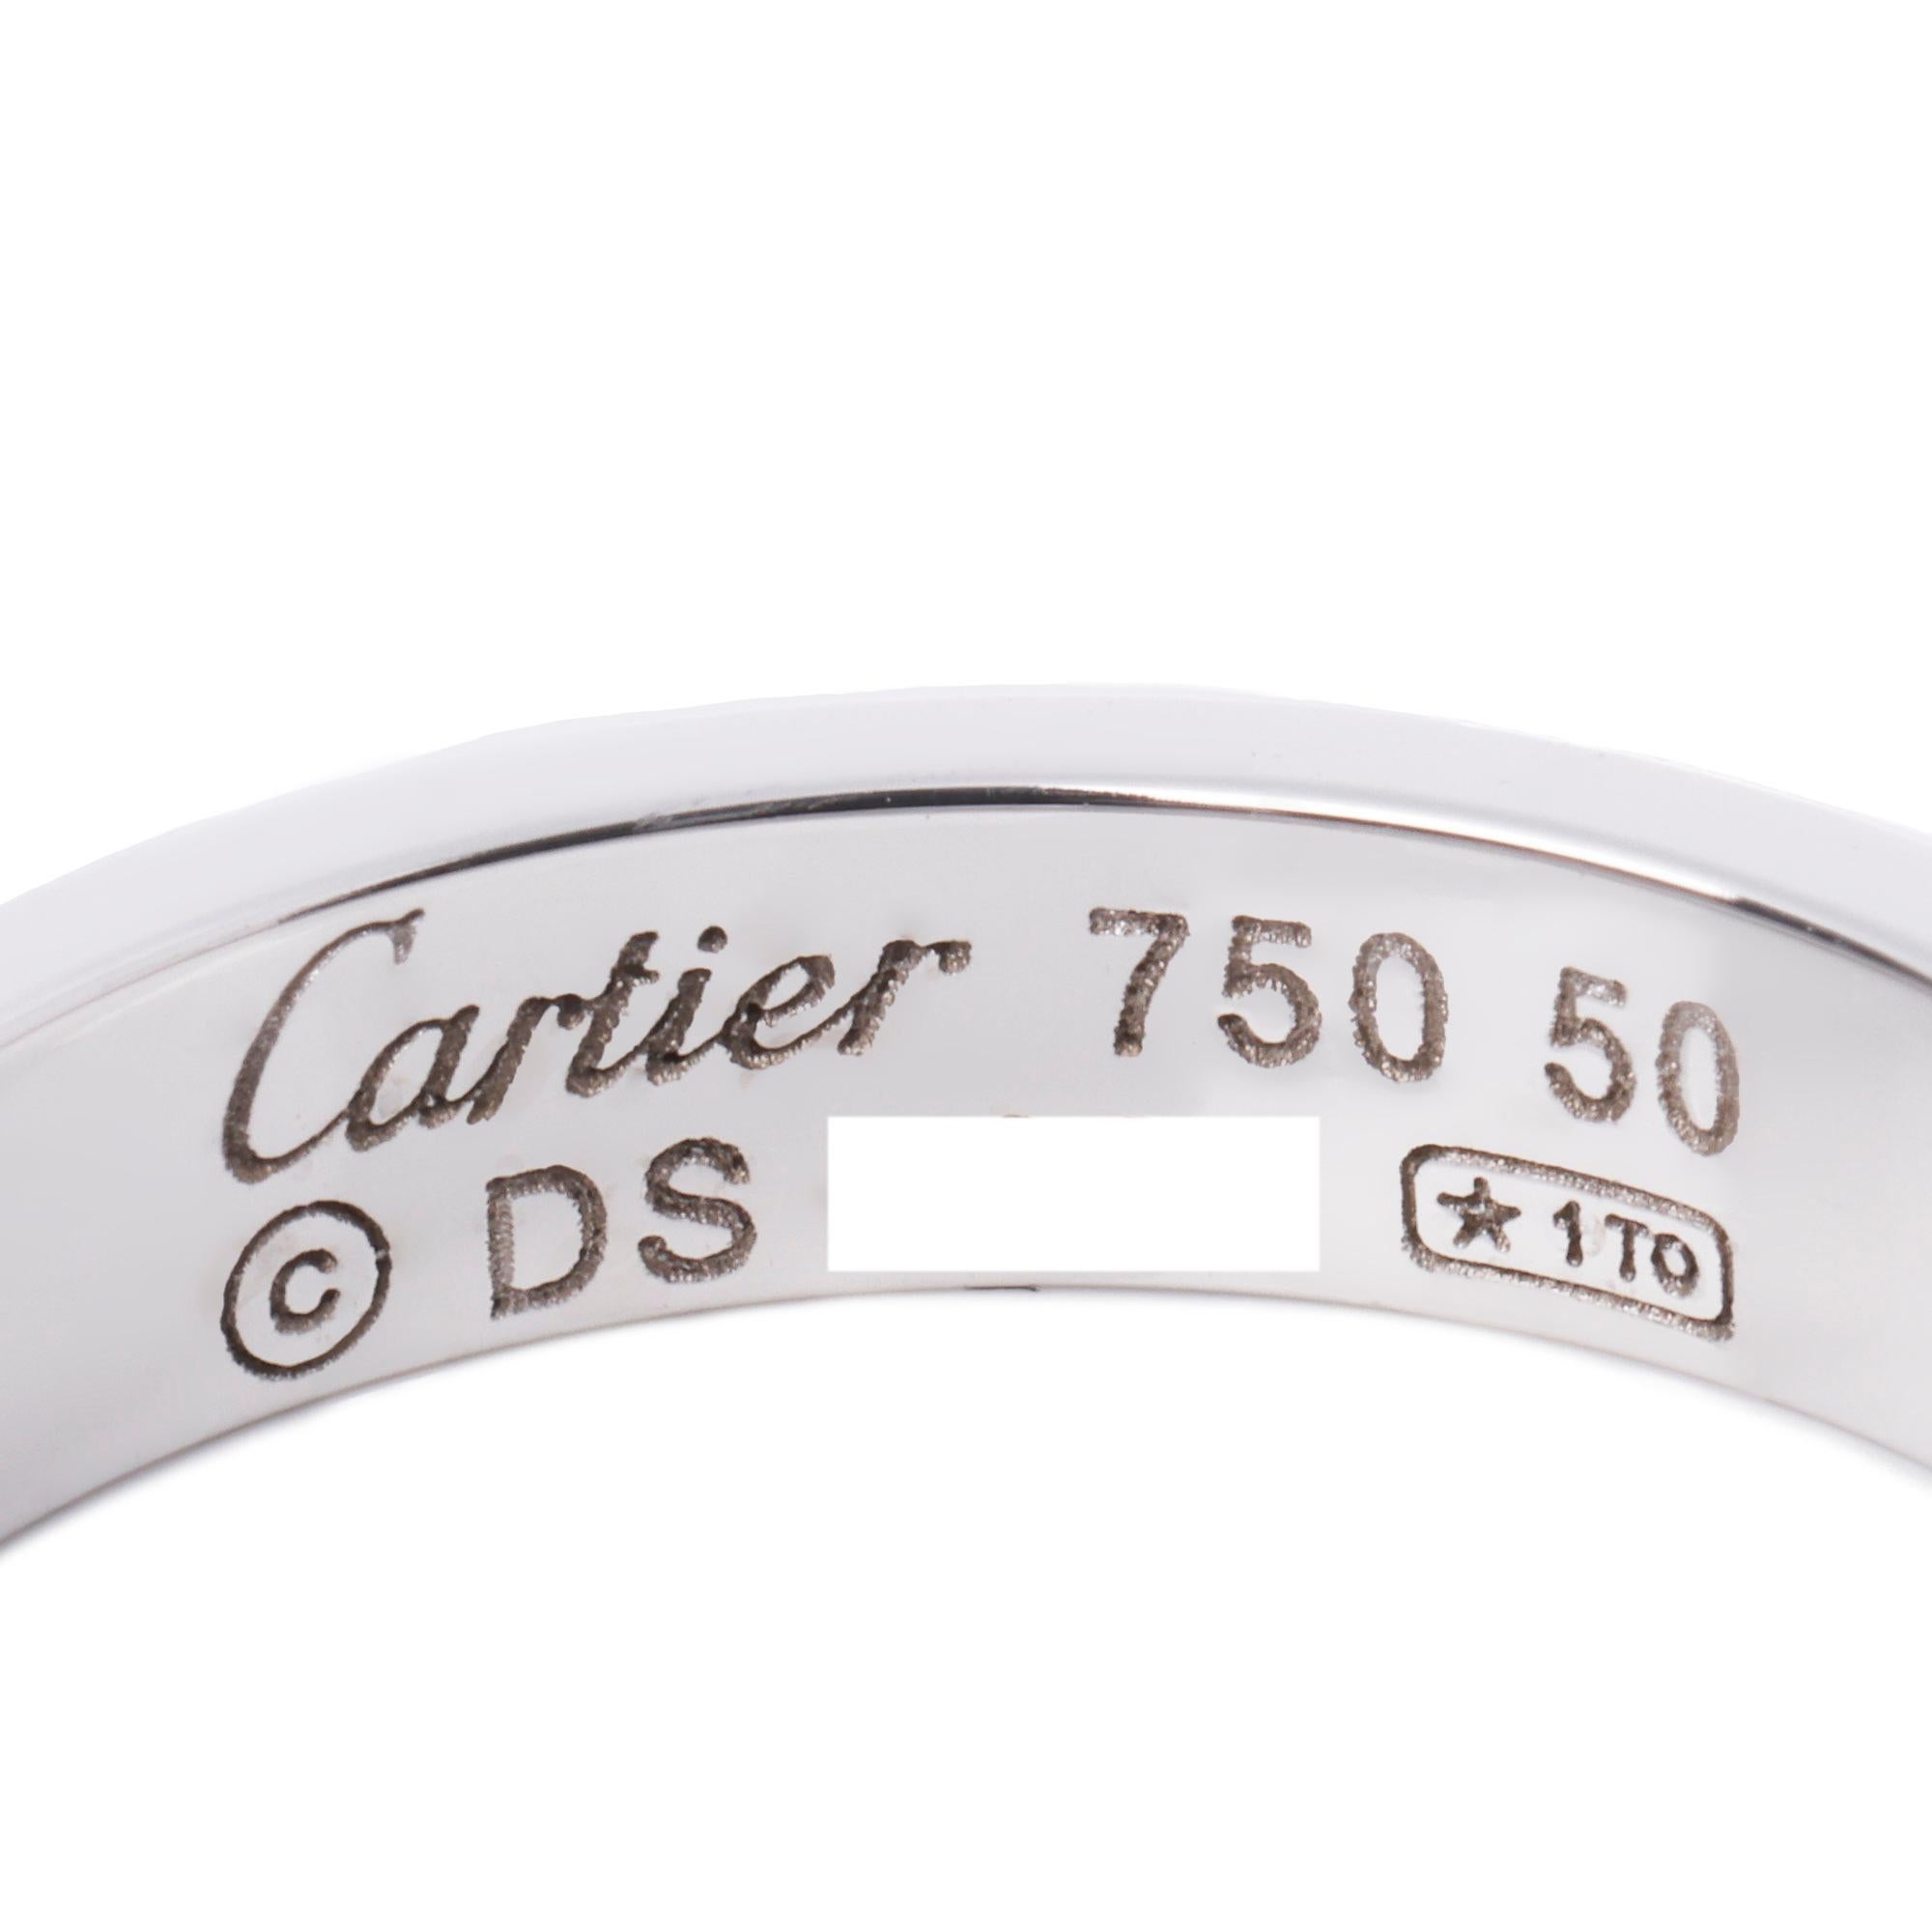 Cartier 18 Karat Weißgold Love Ehering

Marke- Cartier
Modell- Love Wedding Band
Produkttyp- Ring
MATERIAL(e)- 18 Karat Weißgold
UK Ringgröße - K
EU-Ringgröße - 50
US-Ringgröße - 5 1/4
Größenänderung möglich- Nein

Breite des Bandes - 3,6